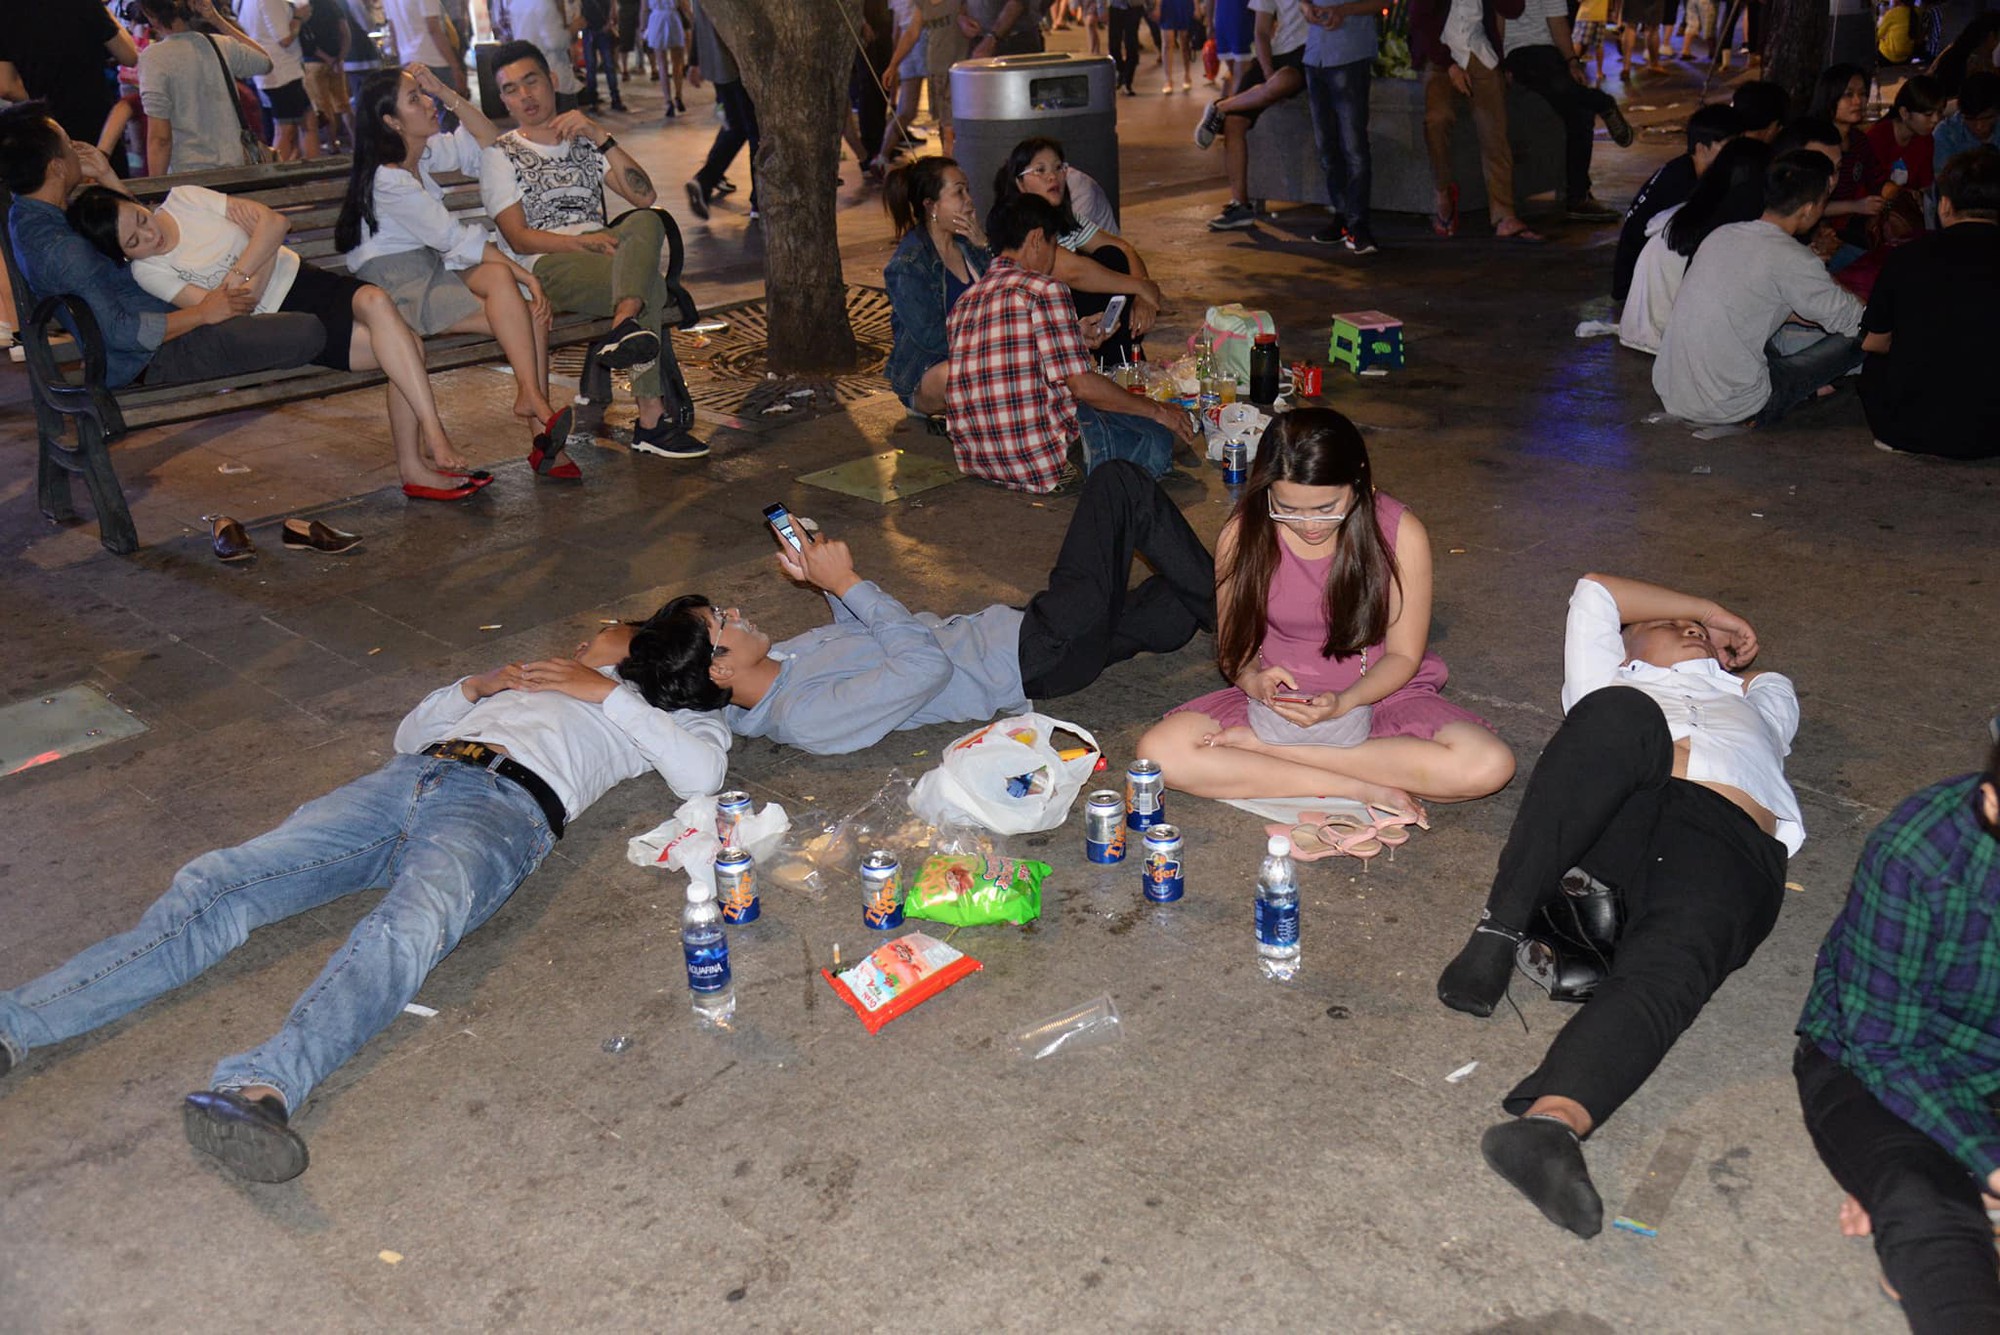 Hình ảnh “nhìn thôi đã mệt”: Thanh niên say bét nhè nằm lăn ra giữa phố, trẻ con đi theo bố mẹ vạ vật chờ giao thừa